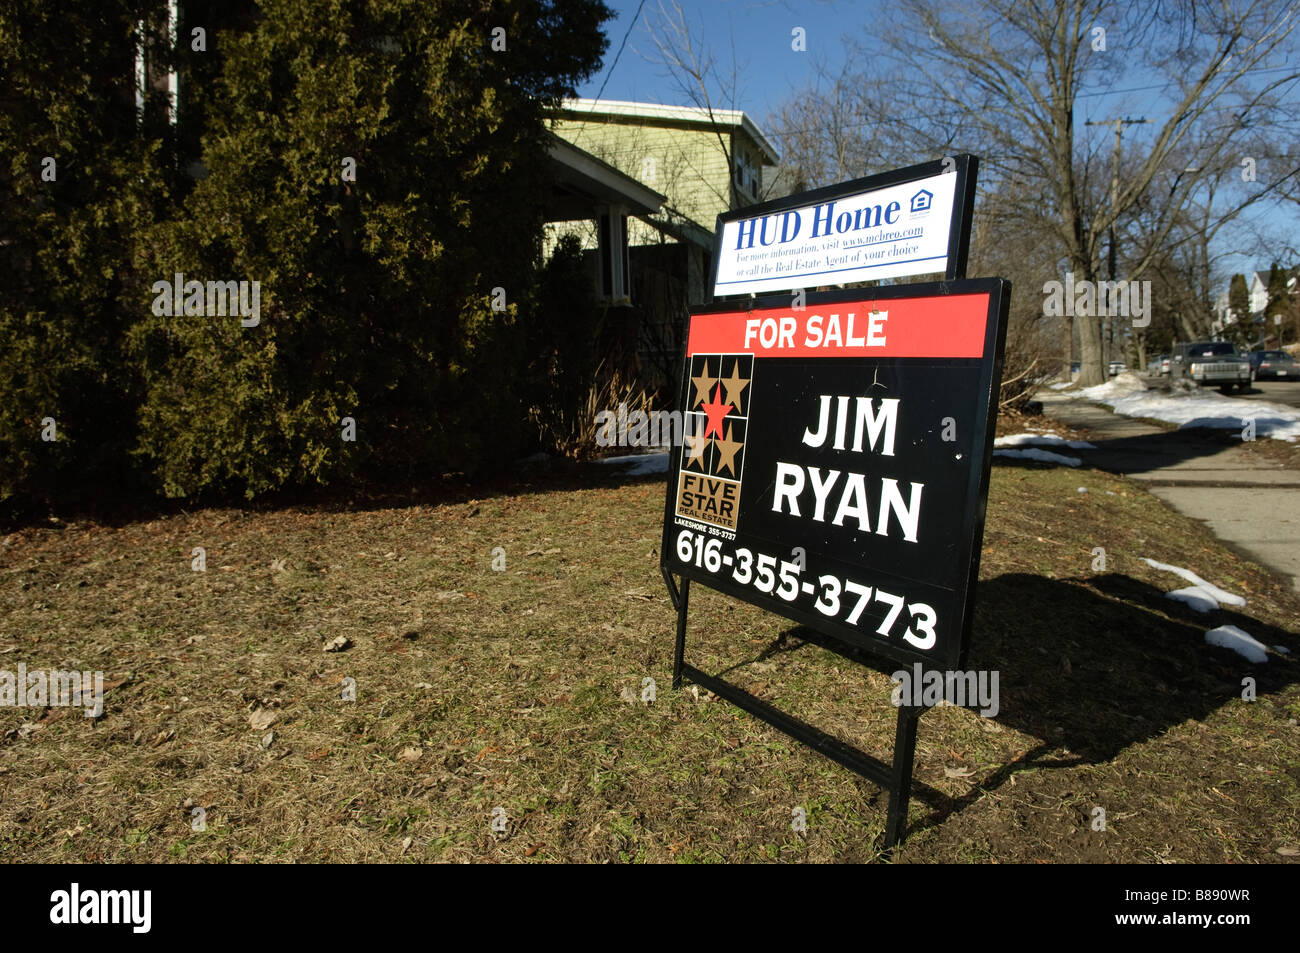 Melden Sie einen HUD Haus zum Verkauf in Grand Rapids Michigan USA Werbung Stockfoto